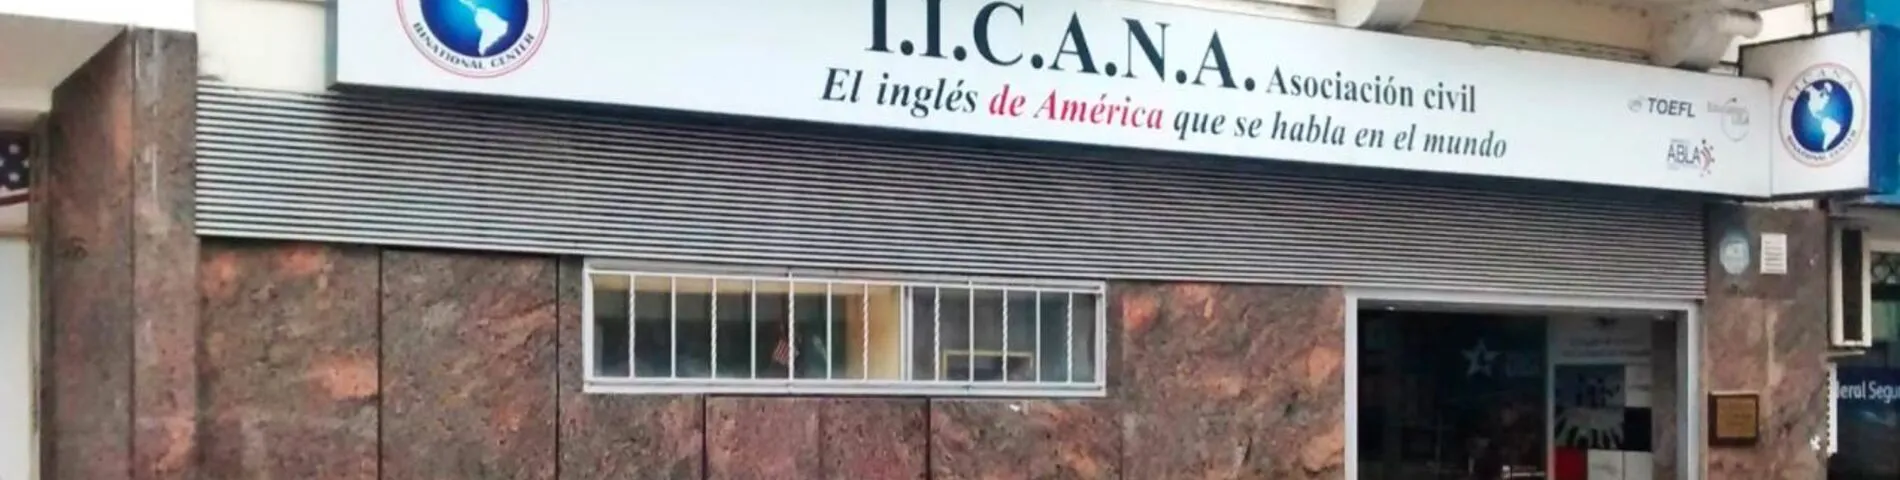 IICANA - Instituto de Intercambio Cultural Argentino Norteamericano صورة 1